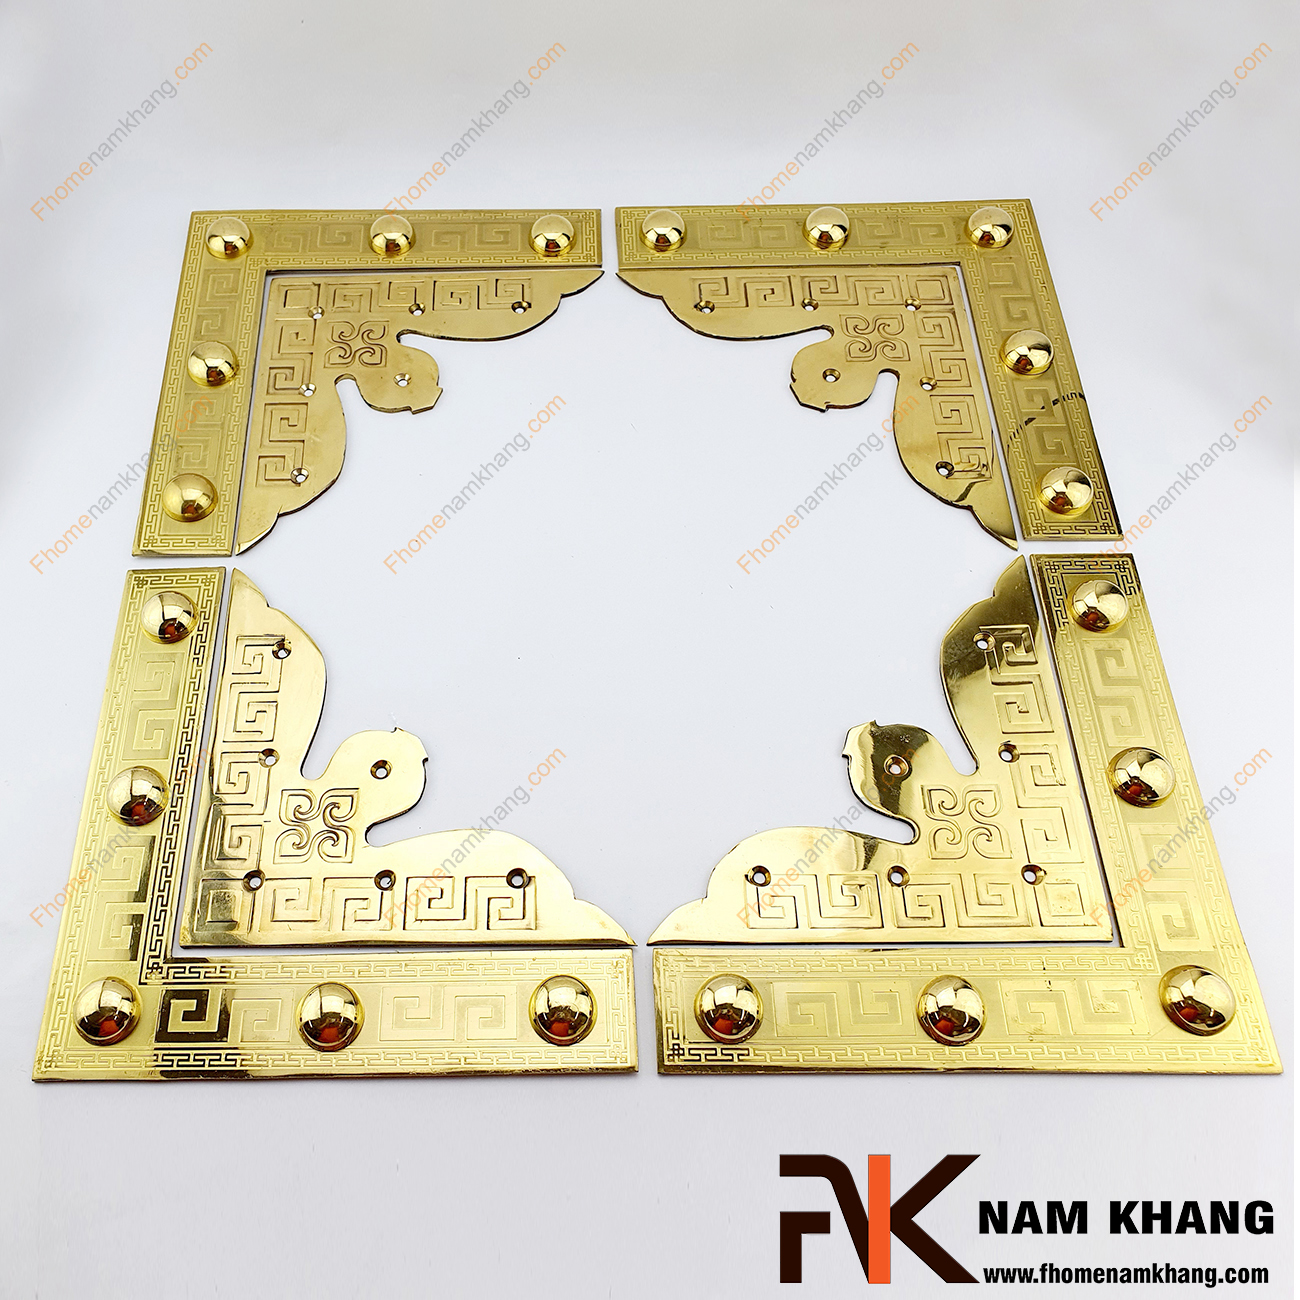 Ke góc cửa gỗ màu đồng vàng bằng đồng NK188-KVM thường dùng cho cửa chính, cửa cổng và đặc biệt là các loại cửa chất liệu gỗ quý mang đến vẻ uy nghiêm, sang trọng của gia chủ.